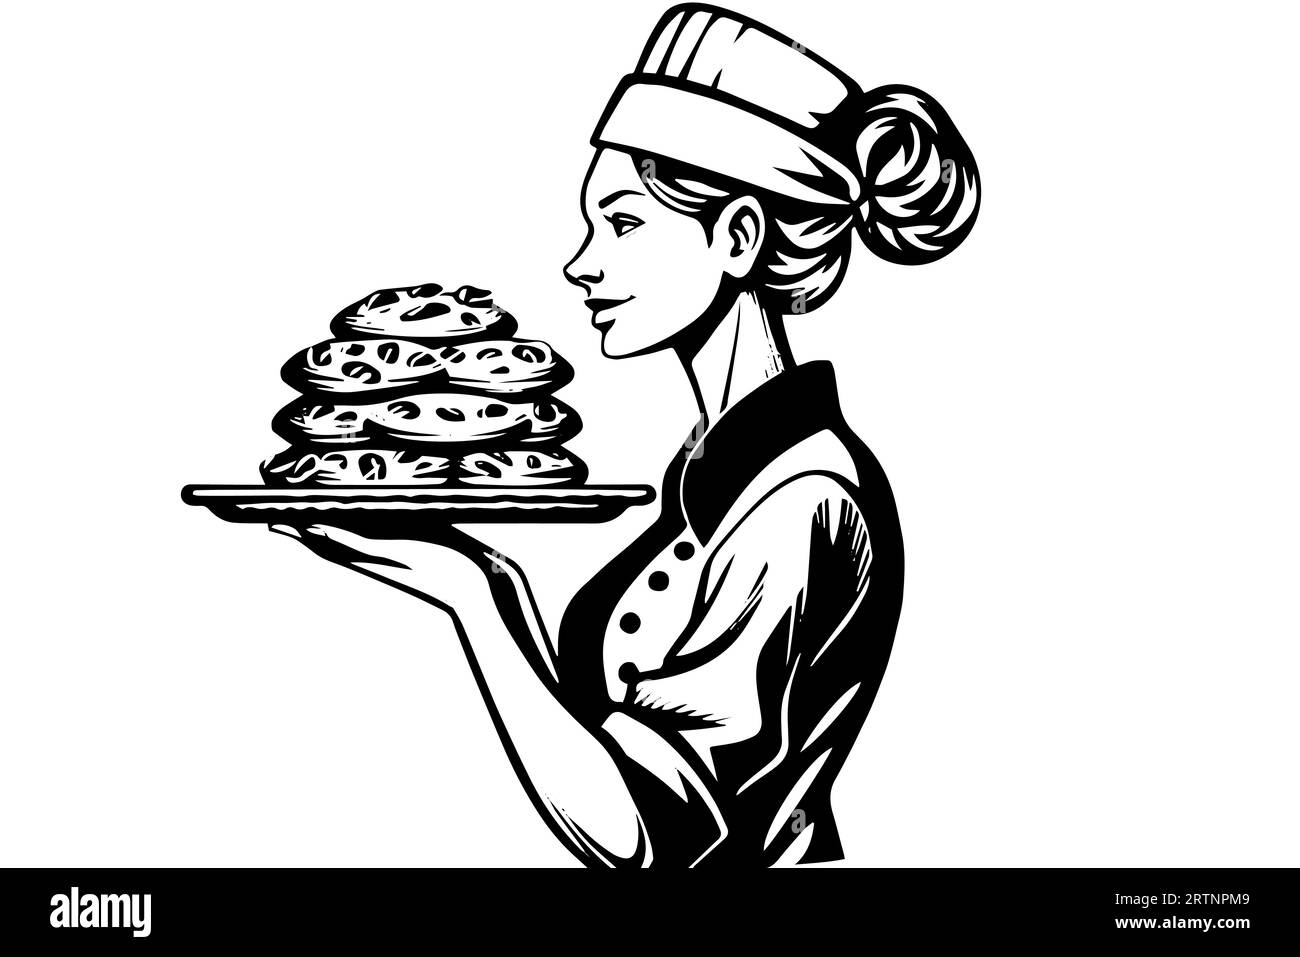 Croquis à l'encre dessiné à la main d'une boulanger femelle avec du pain cuit sur un plateau Illustration vectorielle de style gravé. Conception pour logotype, publicité. Illustration de Vecteur